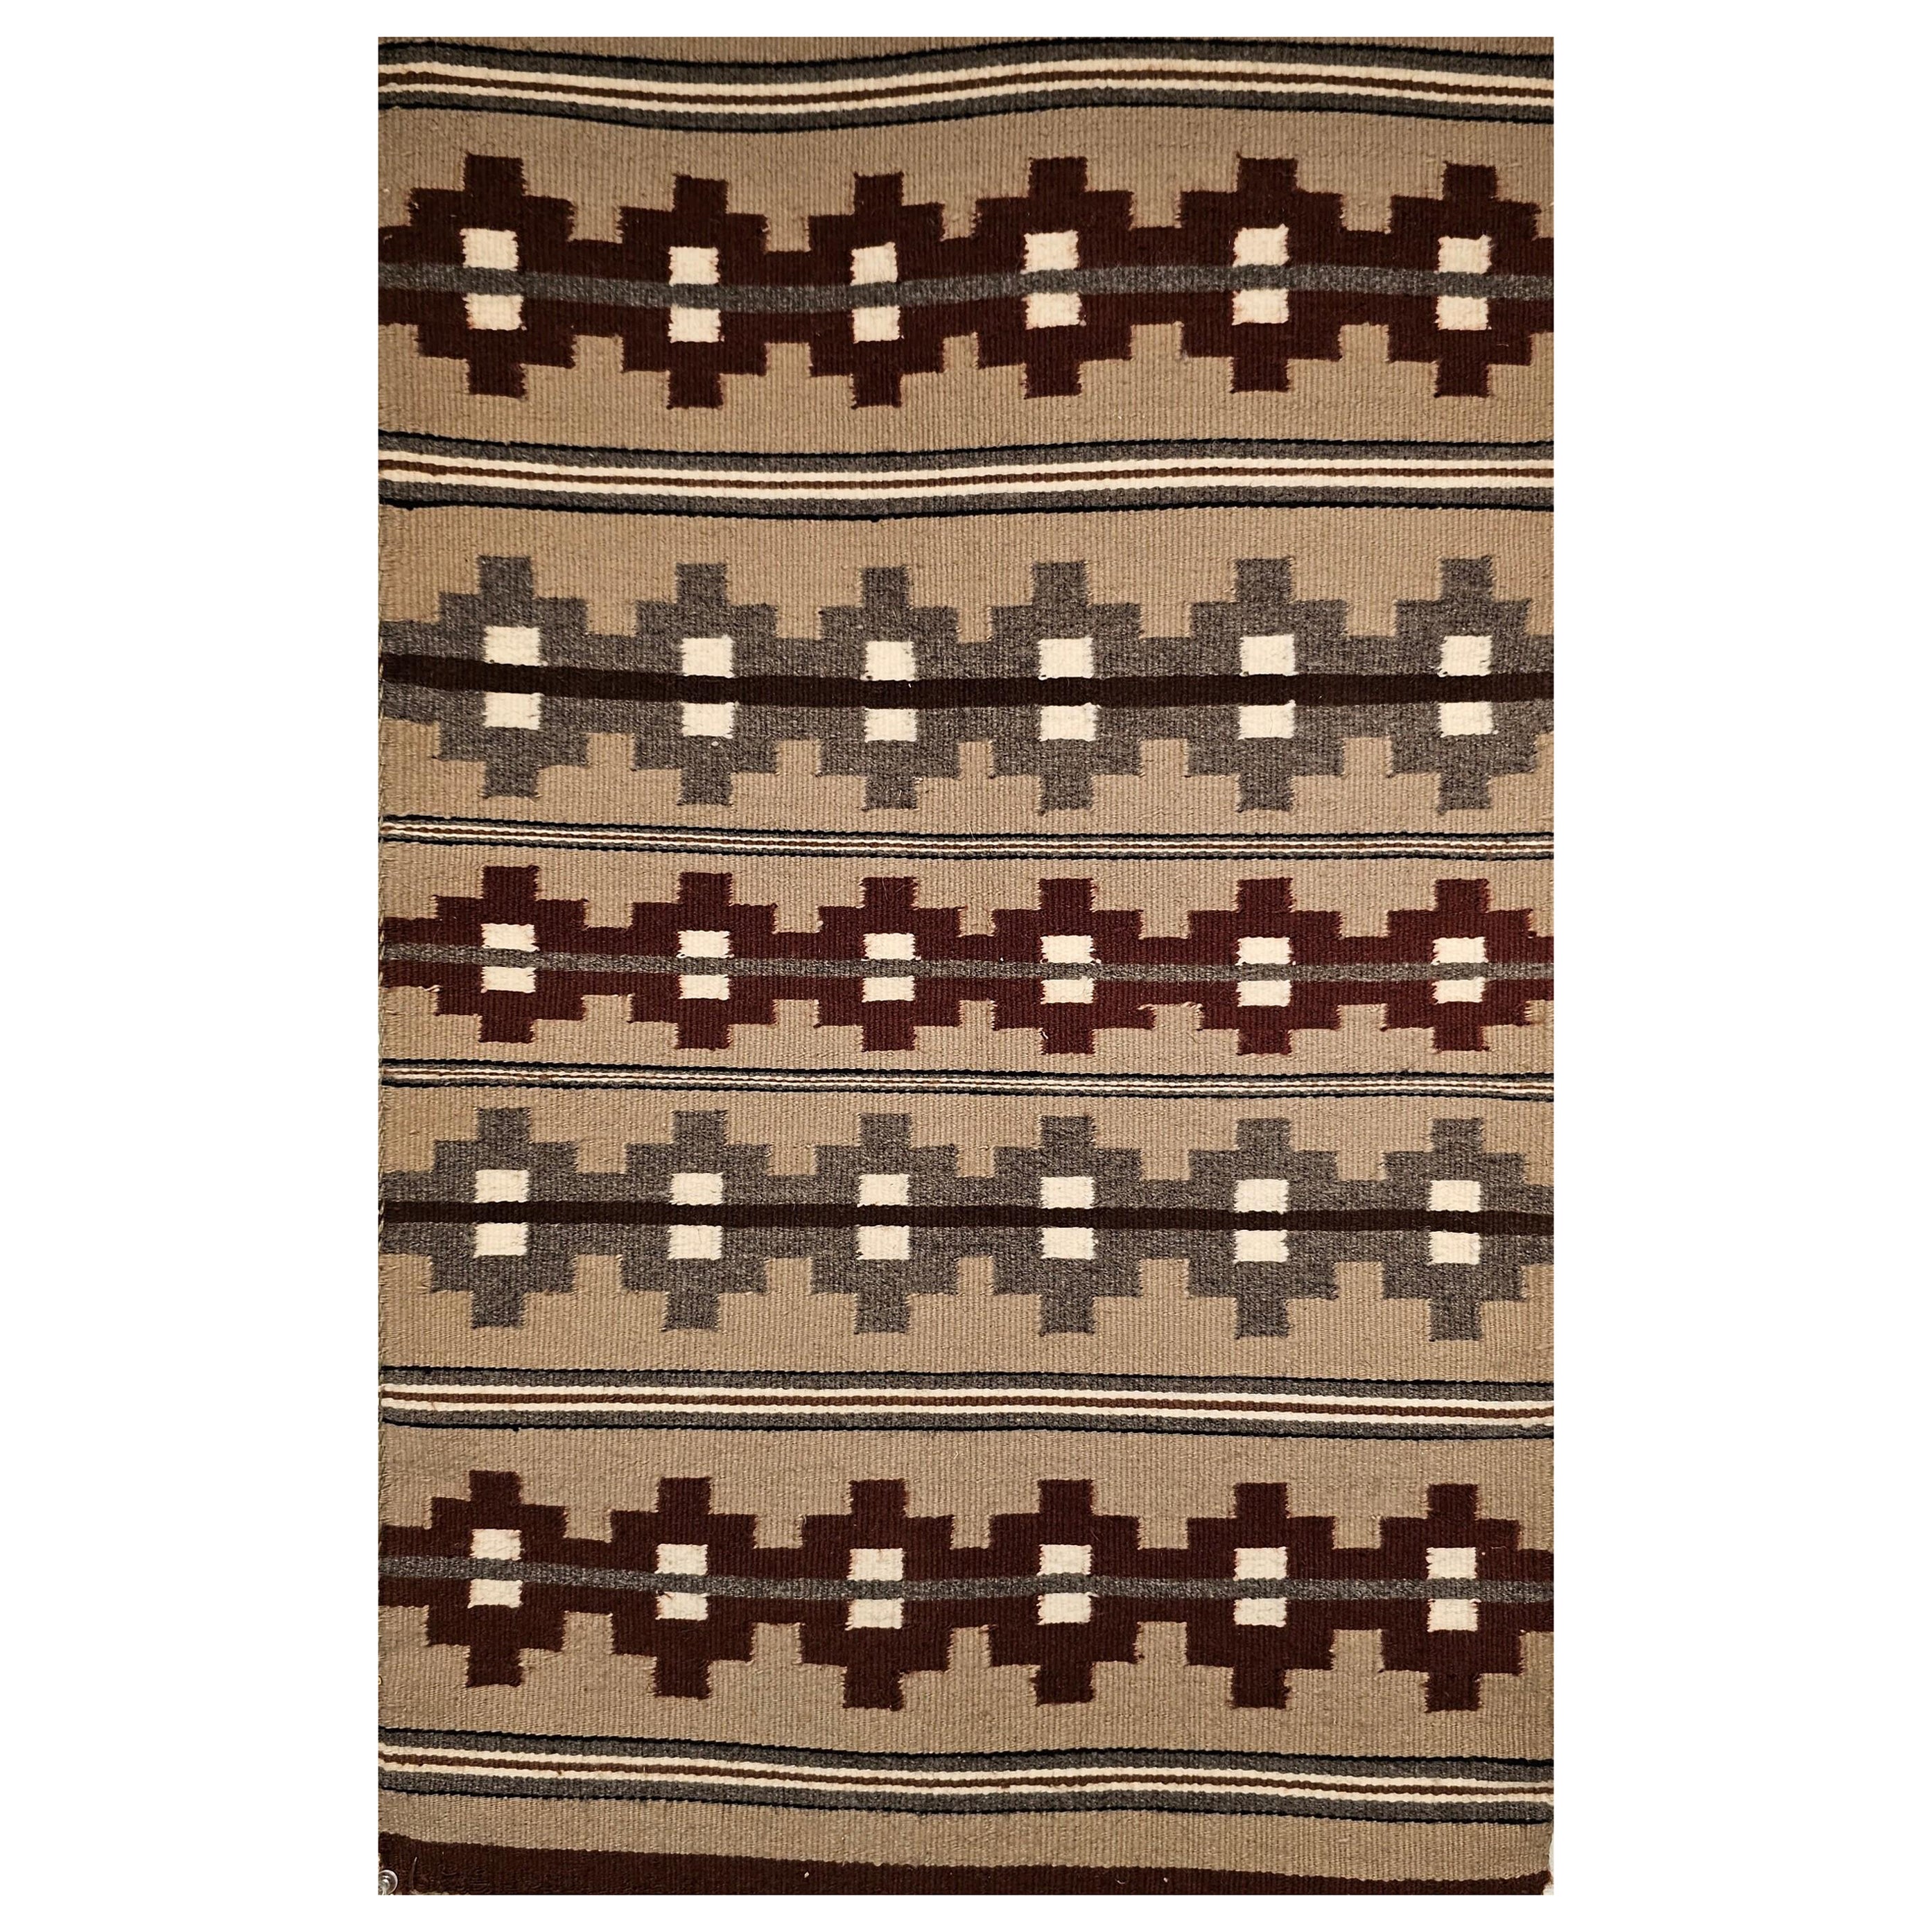 Navajo-Teppich mit Streifenmuster in Burgund, Grau, Elfenbein, Taupe und Brown